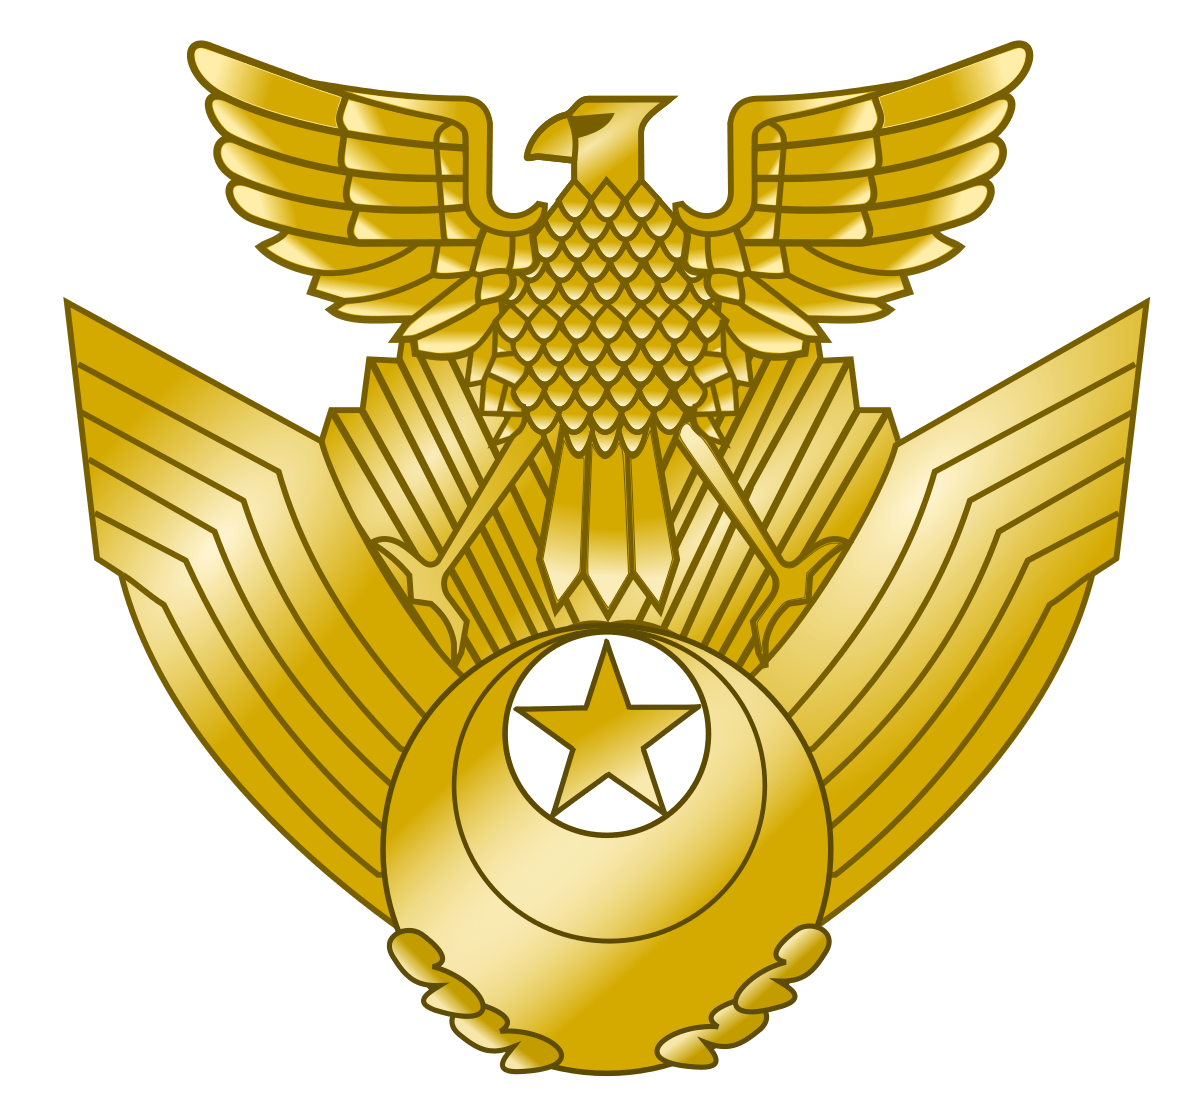 Japan Air Logo - Japan Air Self Defense Force